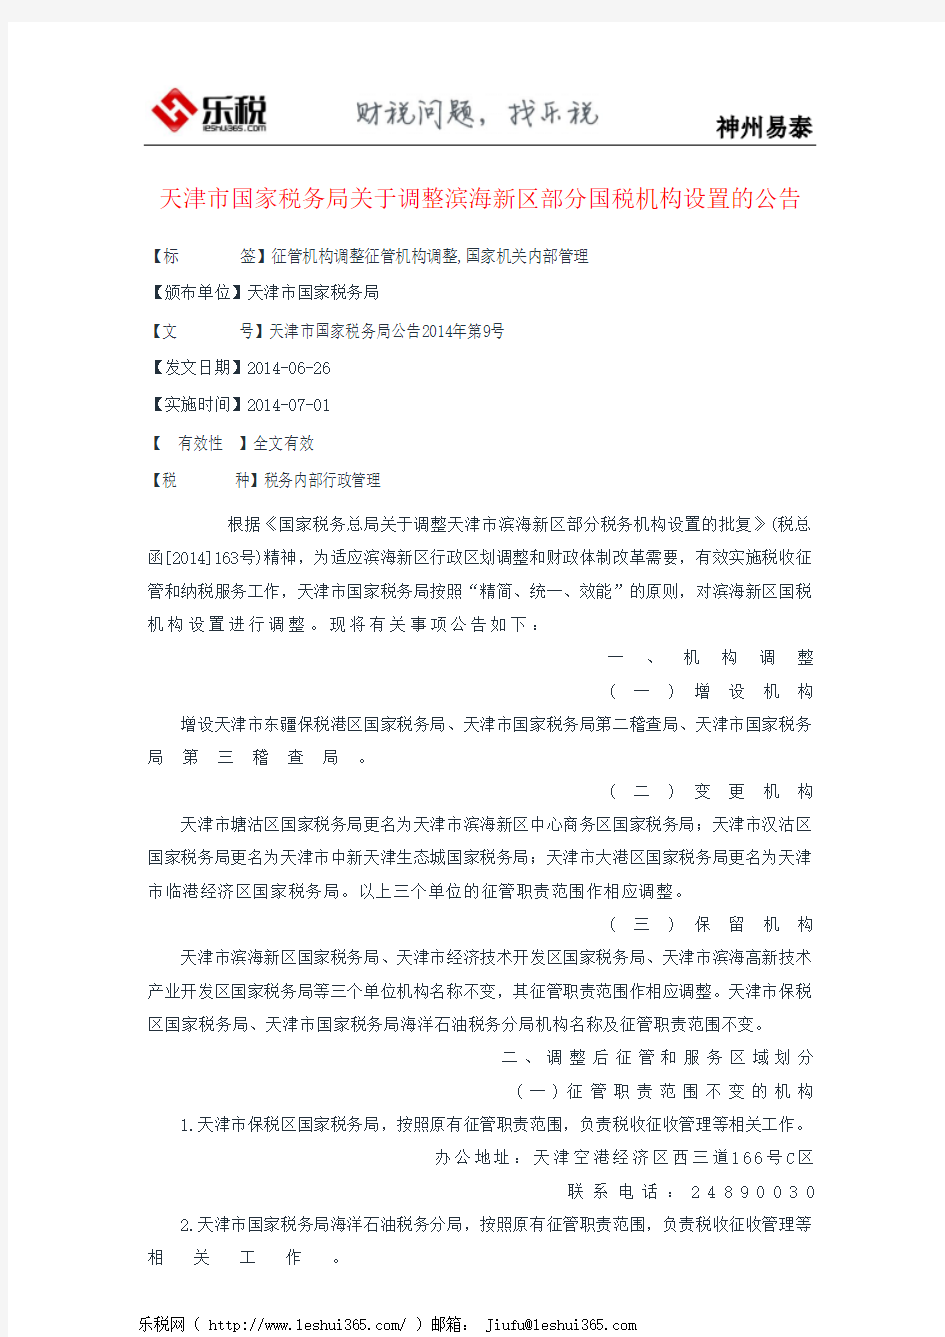 天津市国家税务局关于调整滨海新区部分国税机构设置的公告